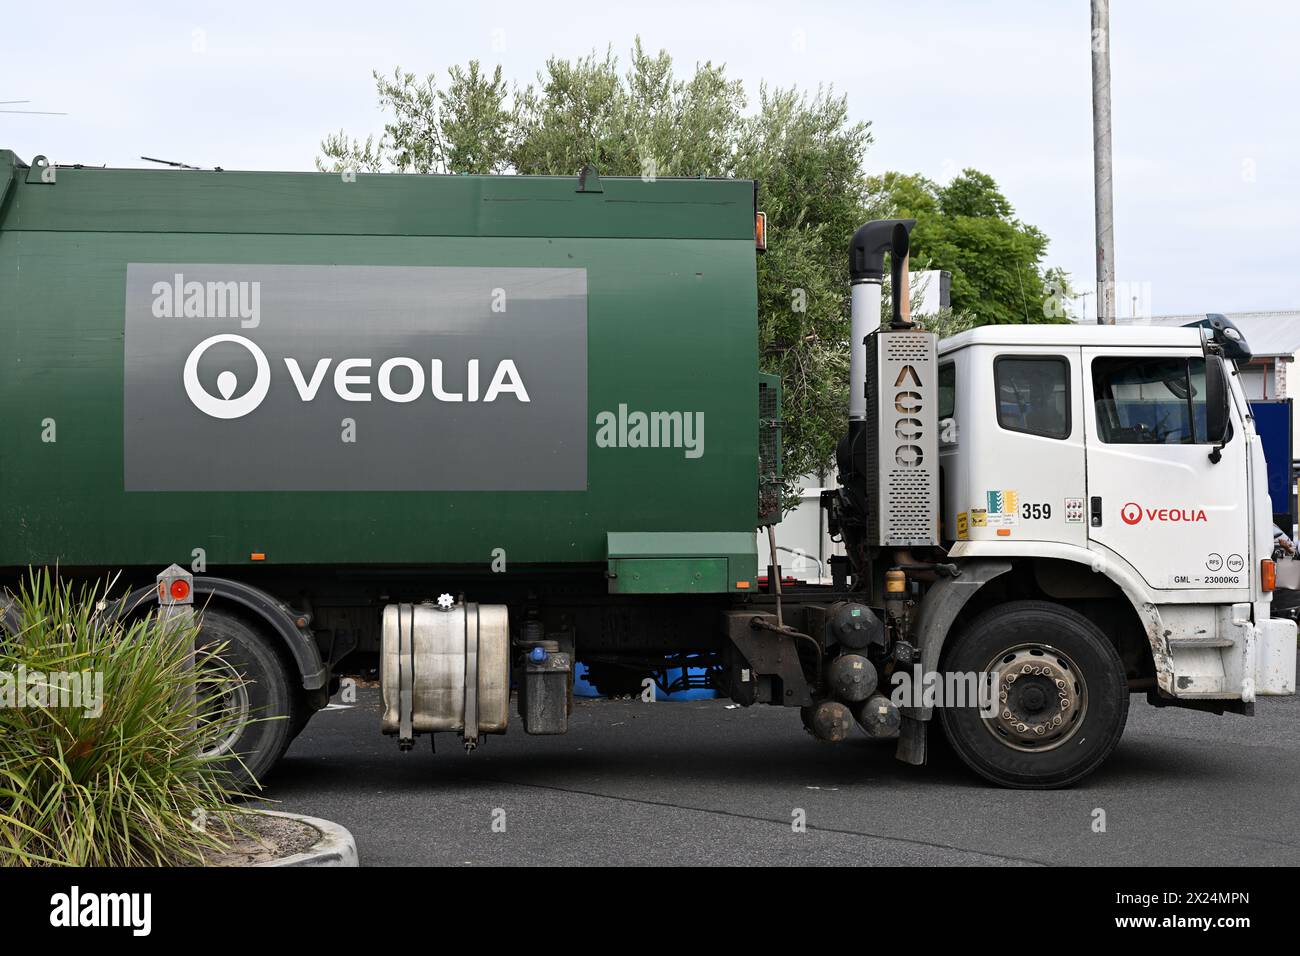 Vue latérale d'un camion poubelle Veolia vert et blanc dans un petit parking, lors d'une journée couverte Banque D'Images